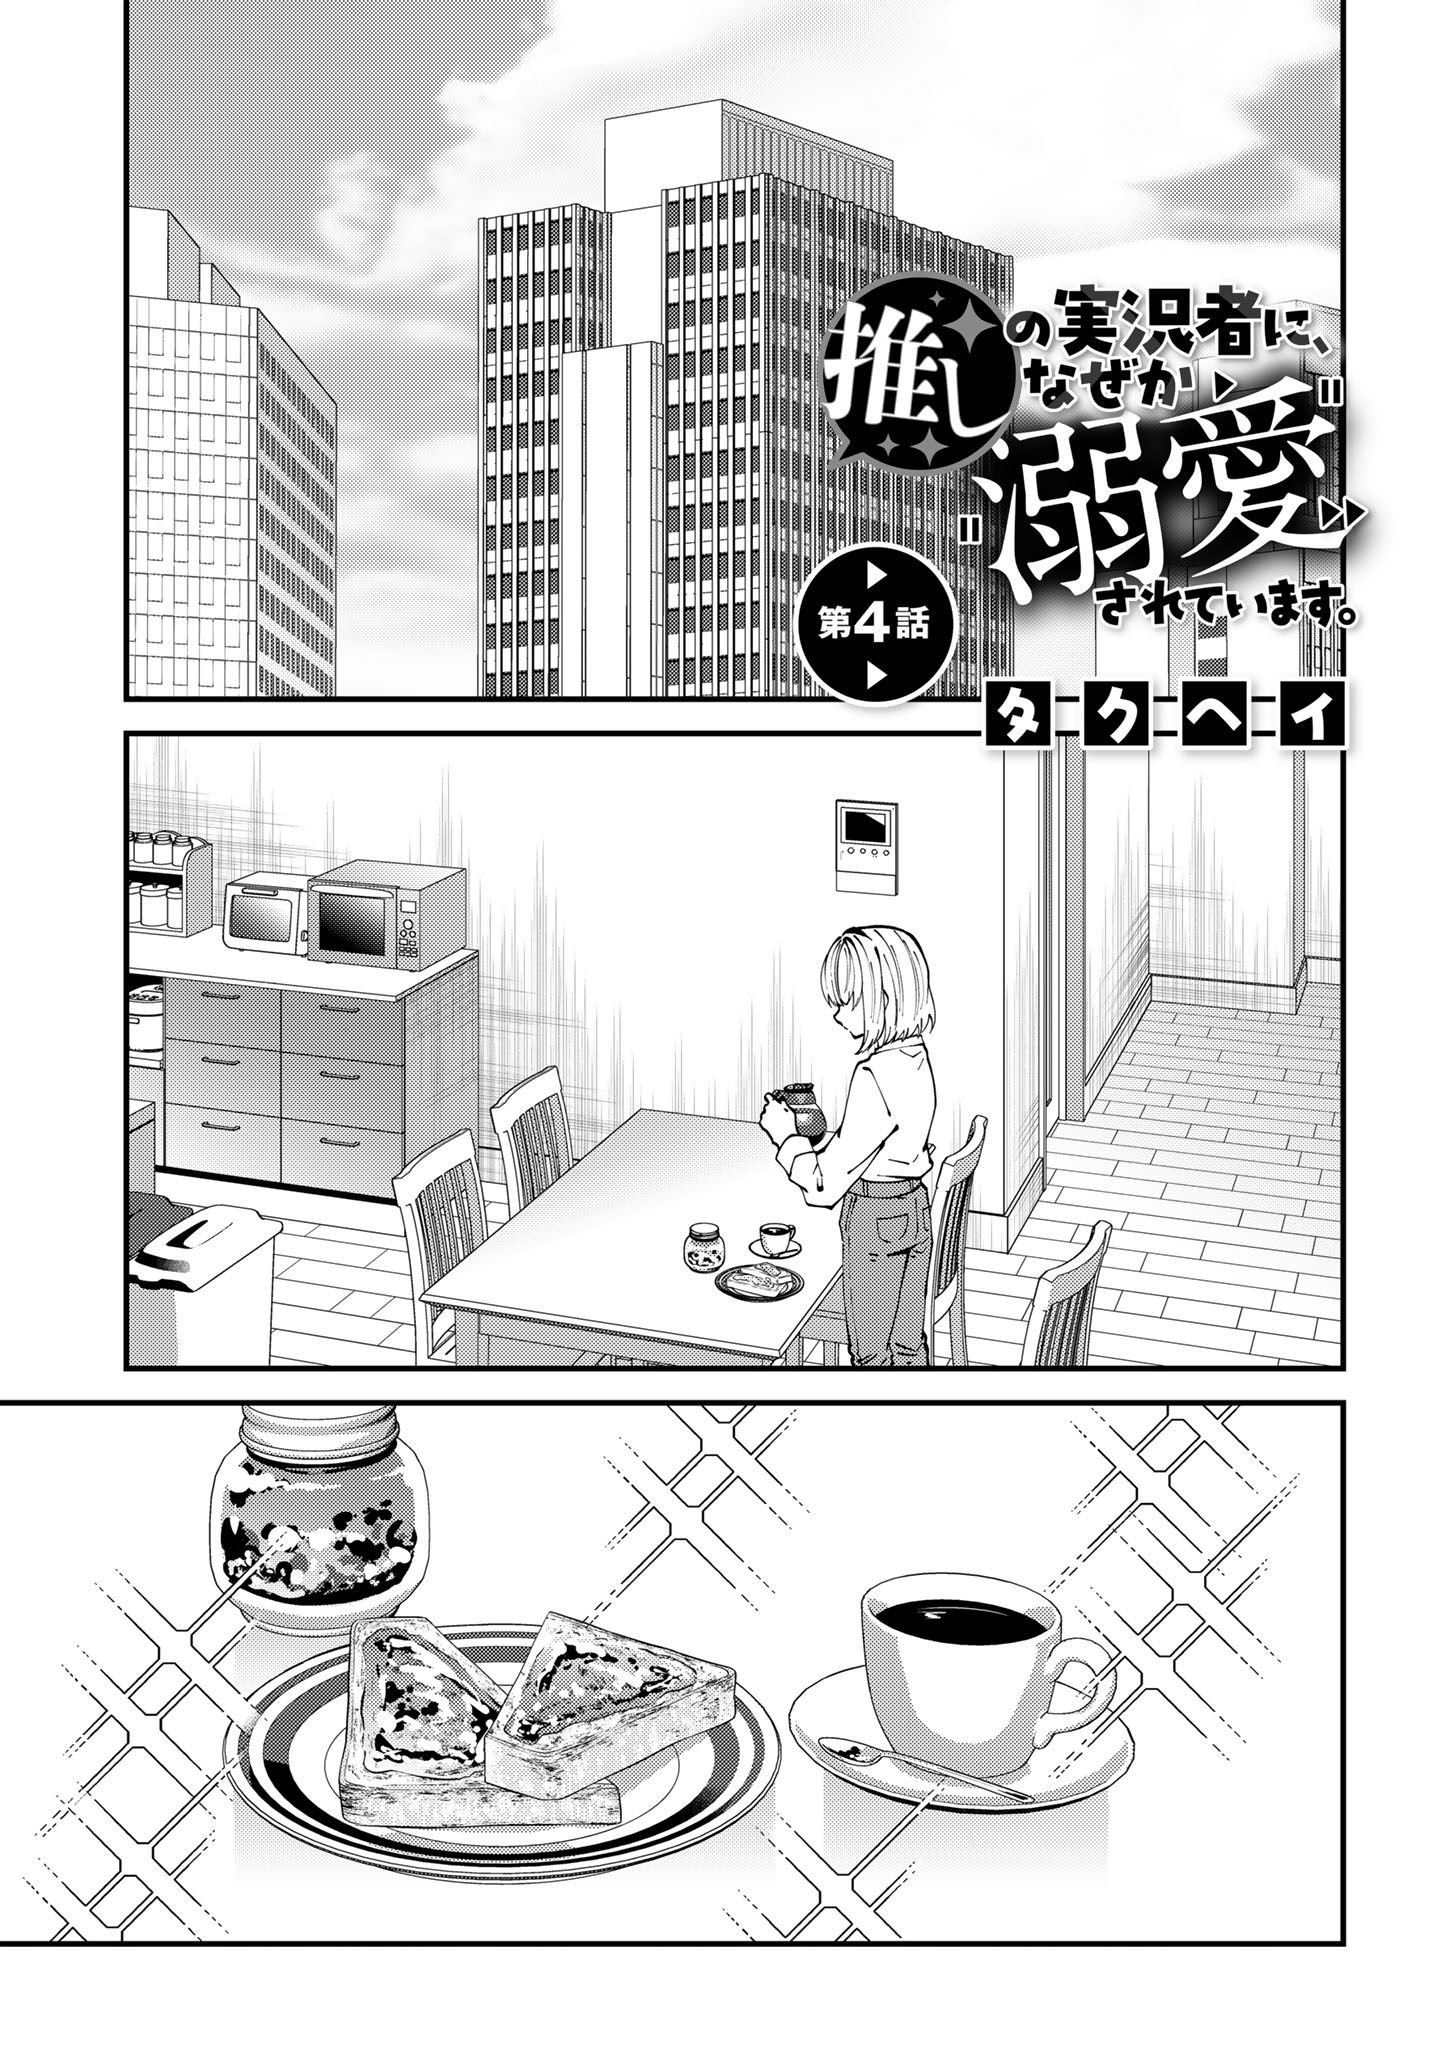 Oshi no Jikkyousha ni, Naze ka Dekiaisareteimasu - Chapter 4 - Page 1